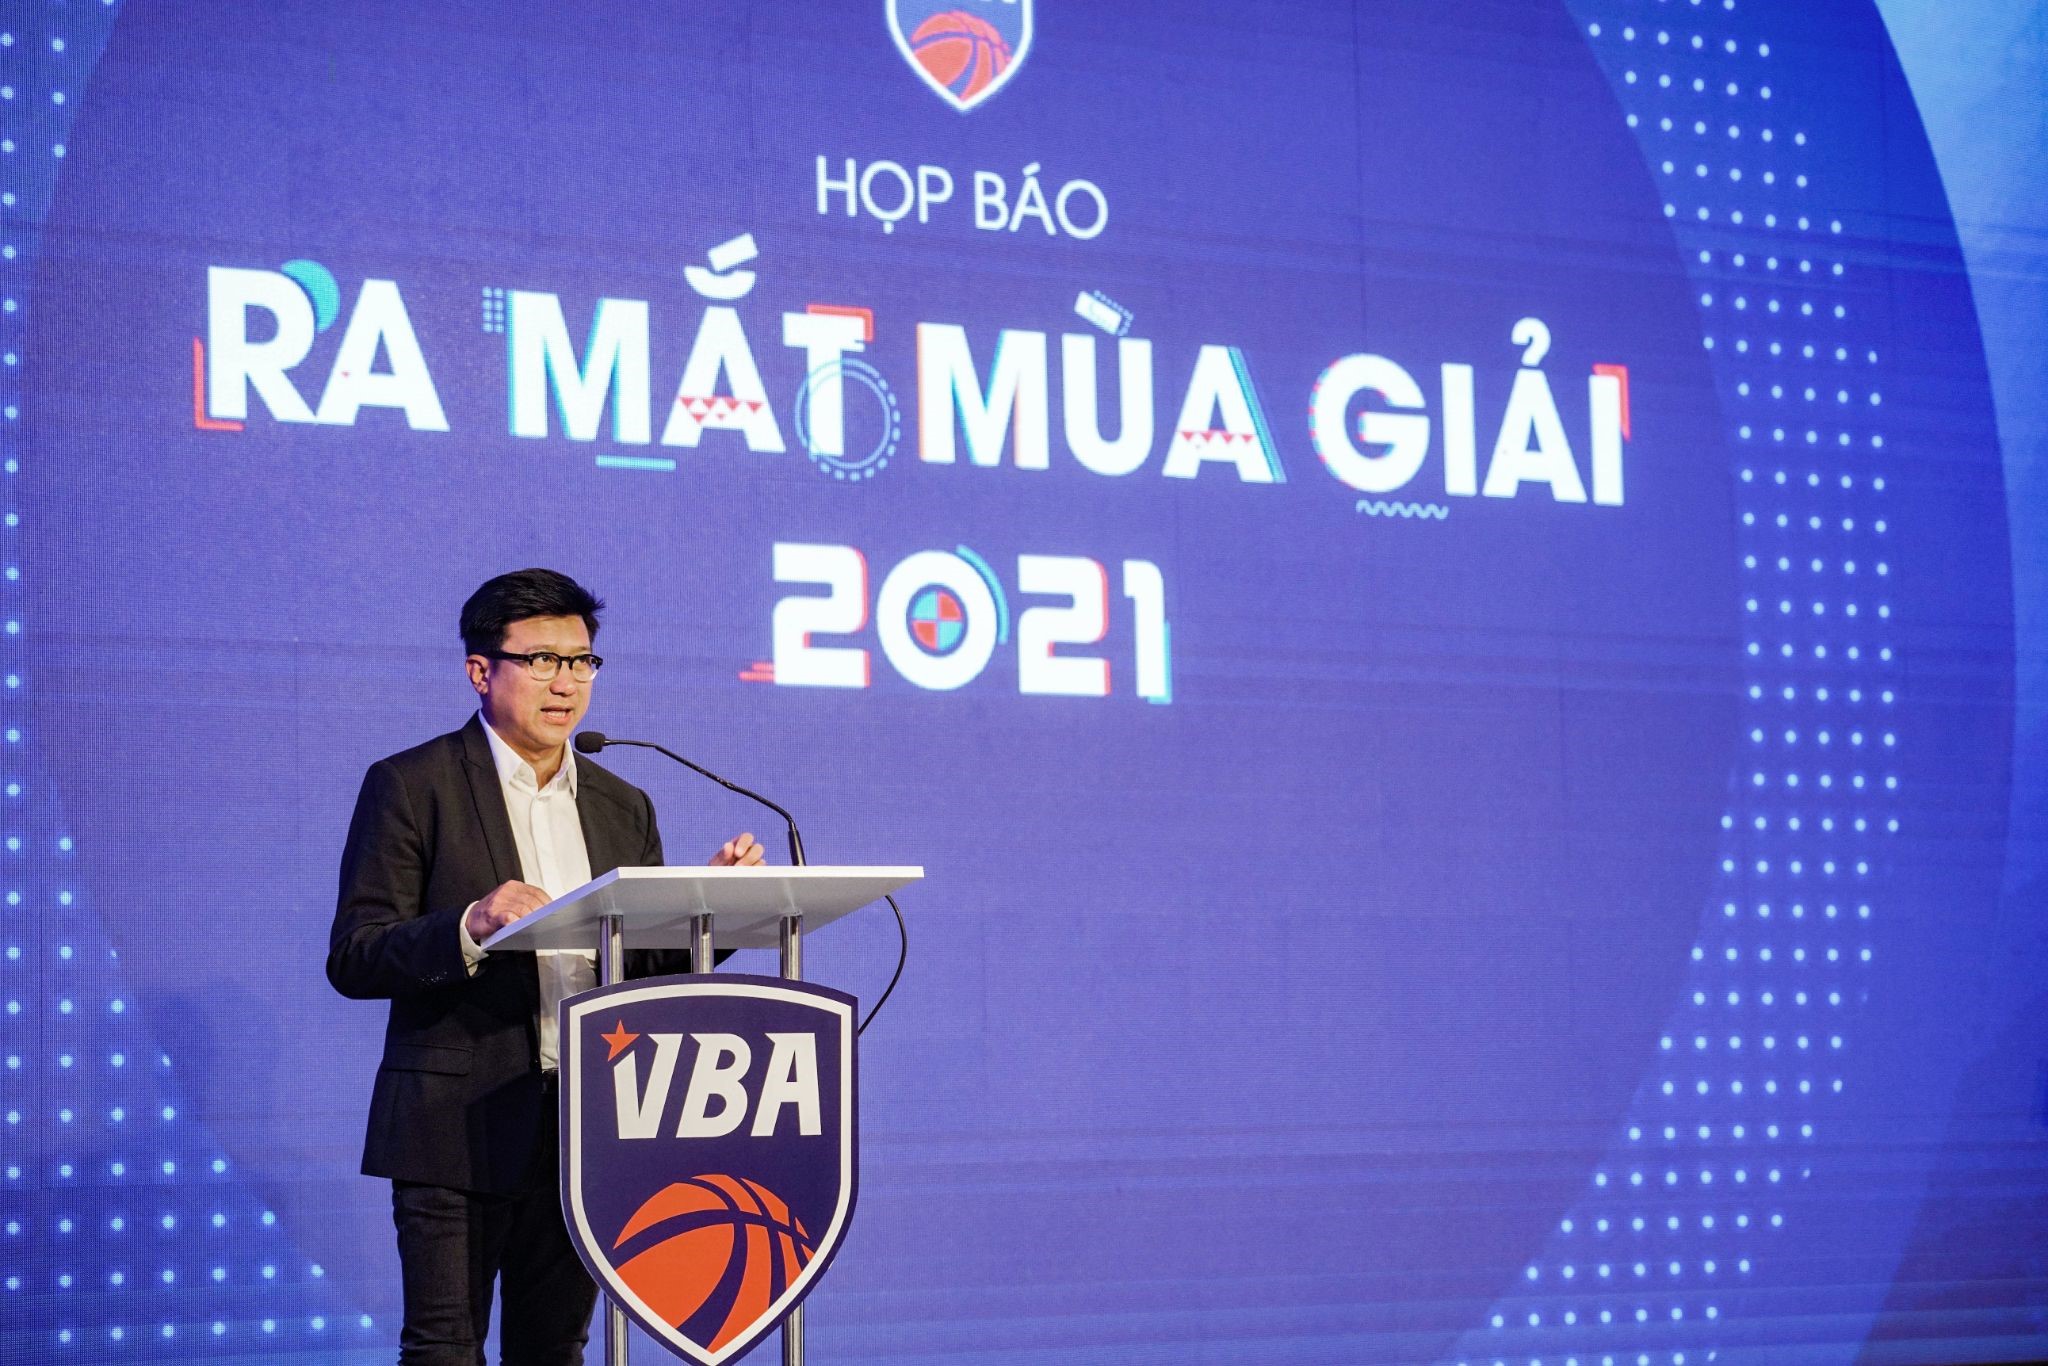 Giới thiệu giải bóng rổ chuyên nghiệp Việt Nam mùa giải 2021 và ra mắt đội tuyển bóng rổ nam 5x5 Quốc gia - ảnh 1